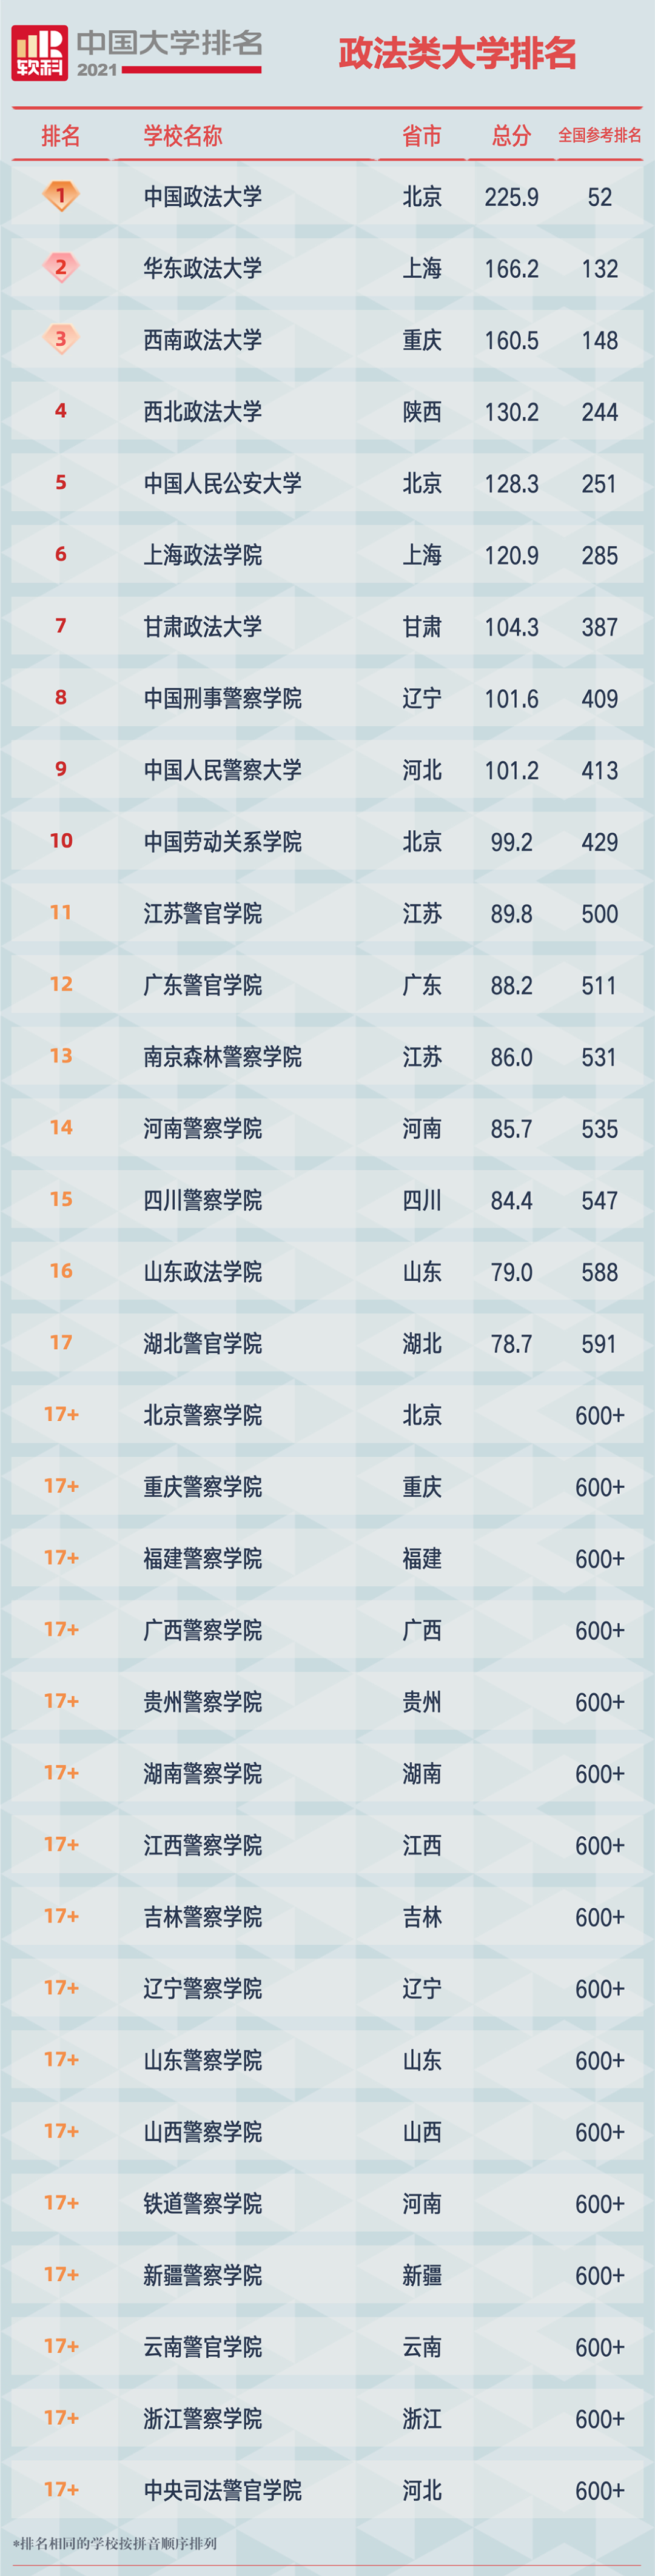 2021软科中国政法类大学排名榜单